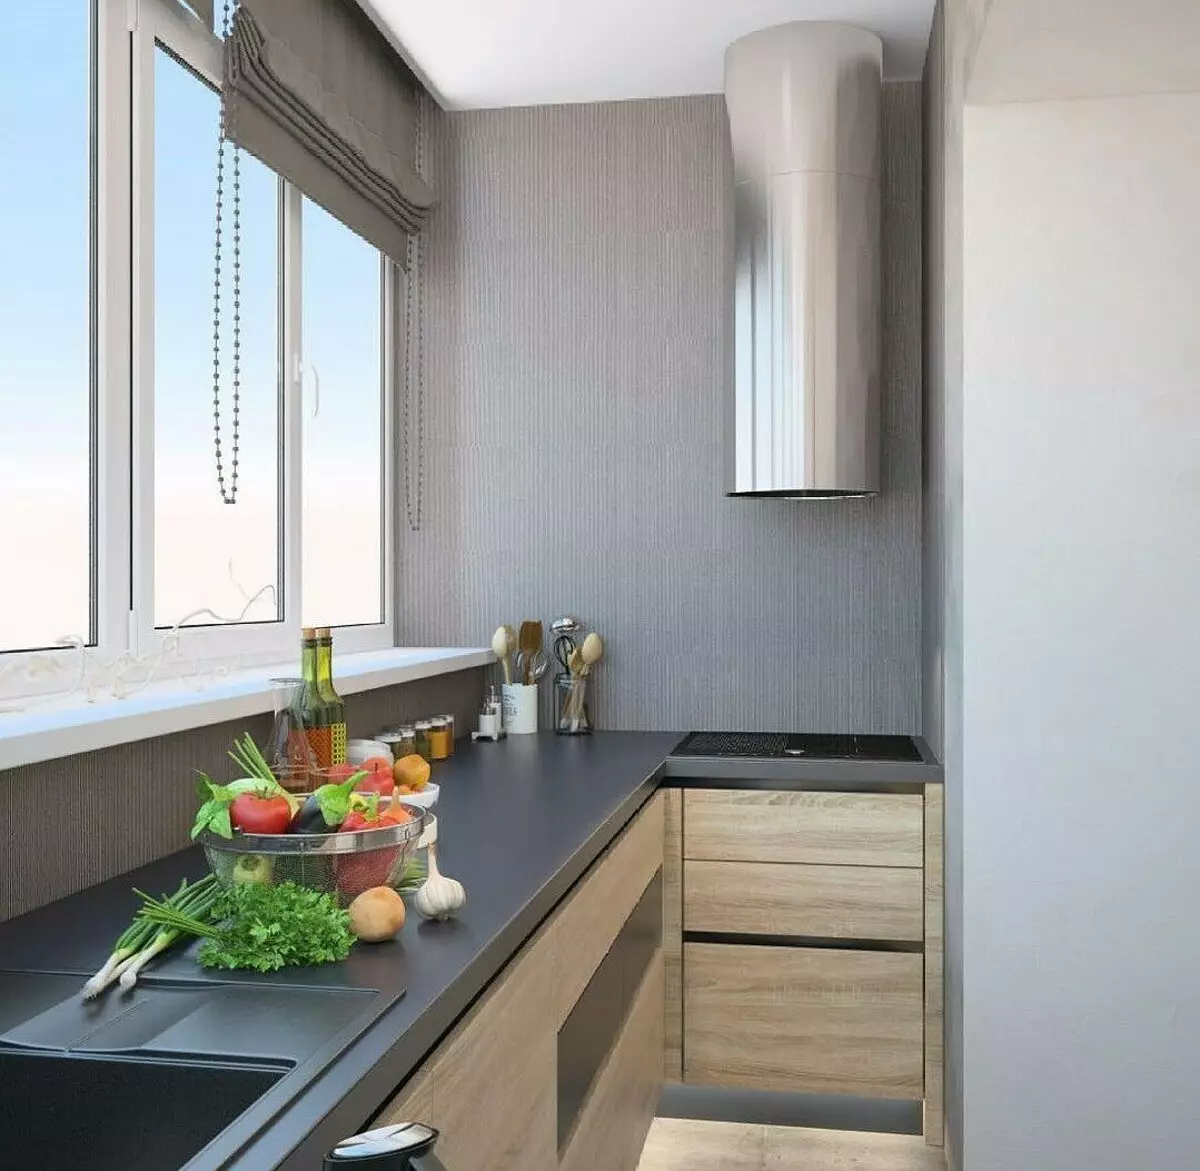 Дизайн балкона кухни фото. Кухня на балконе. Кухня на маленьком балконе. Планировка кухни с балконом. Интерьер кухни с лоджией.